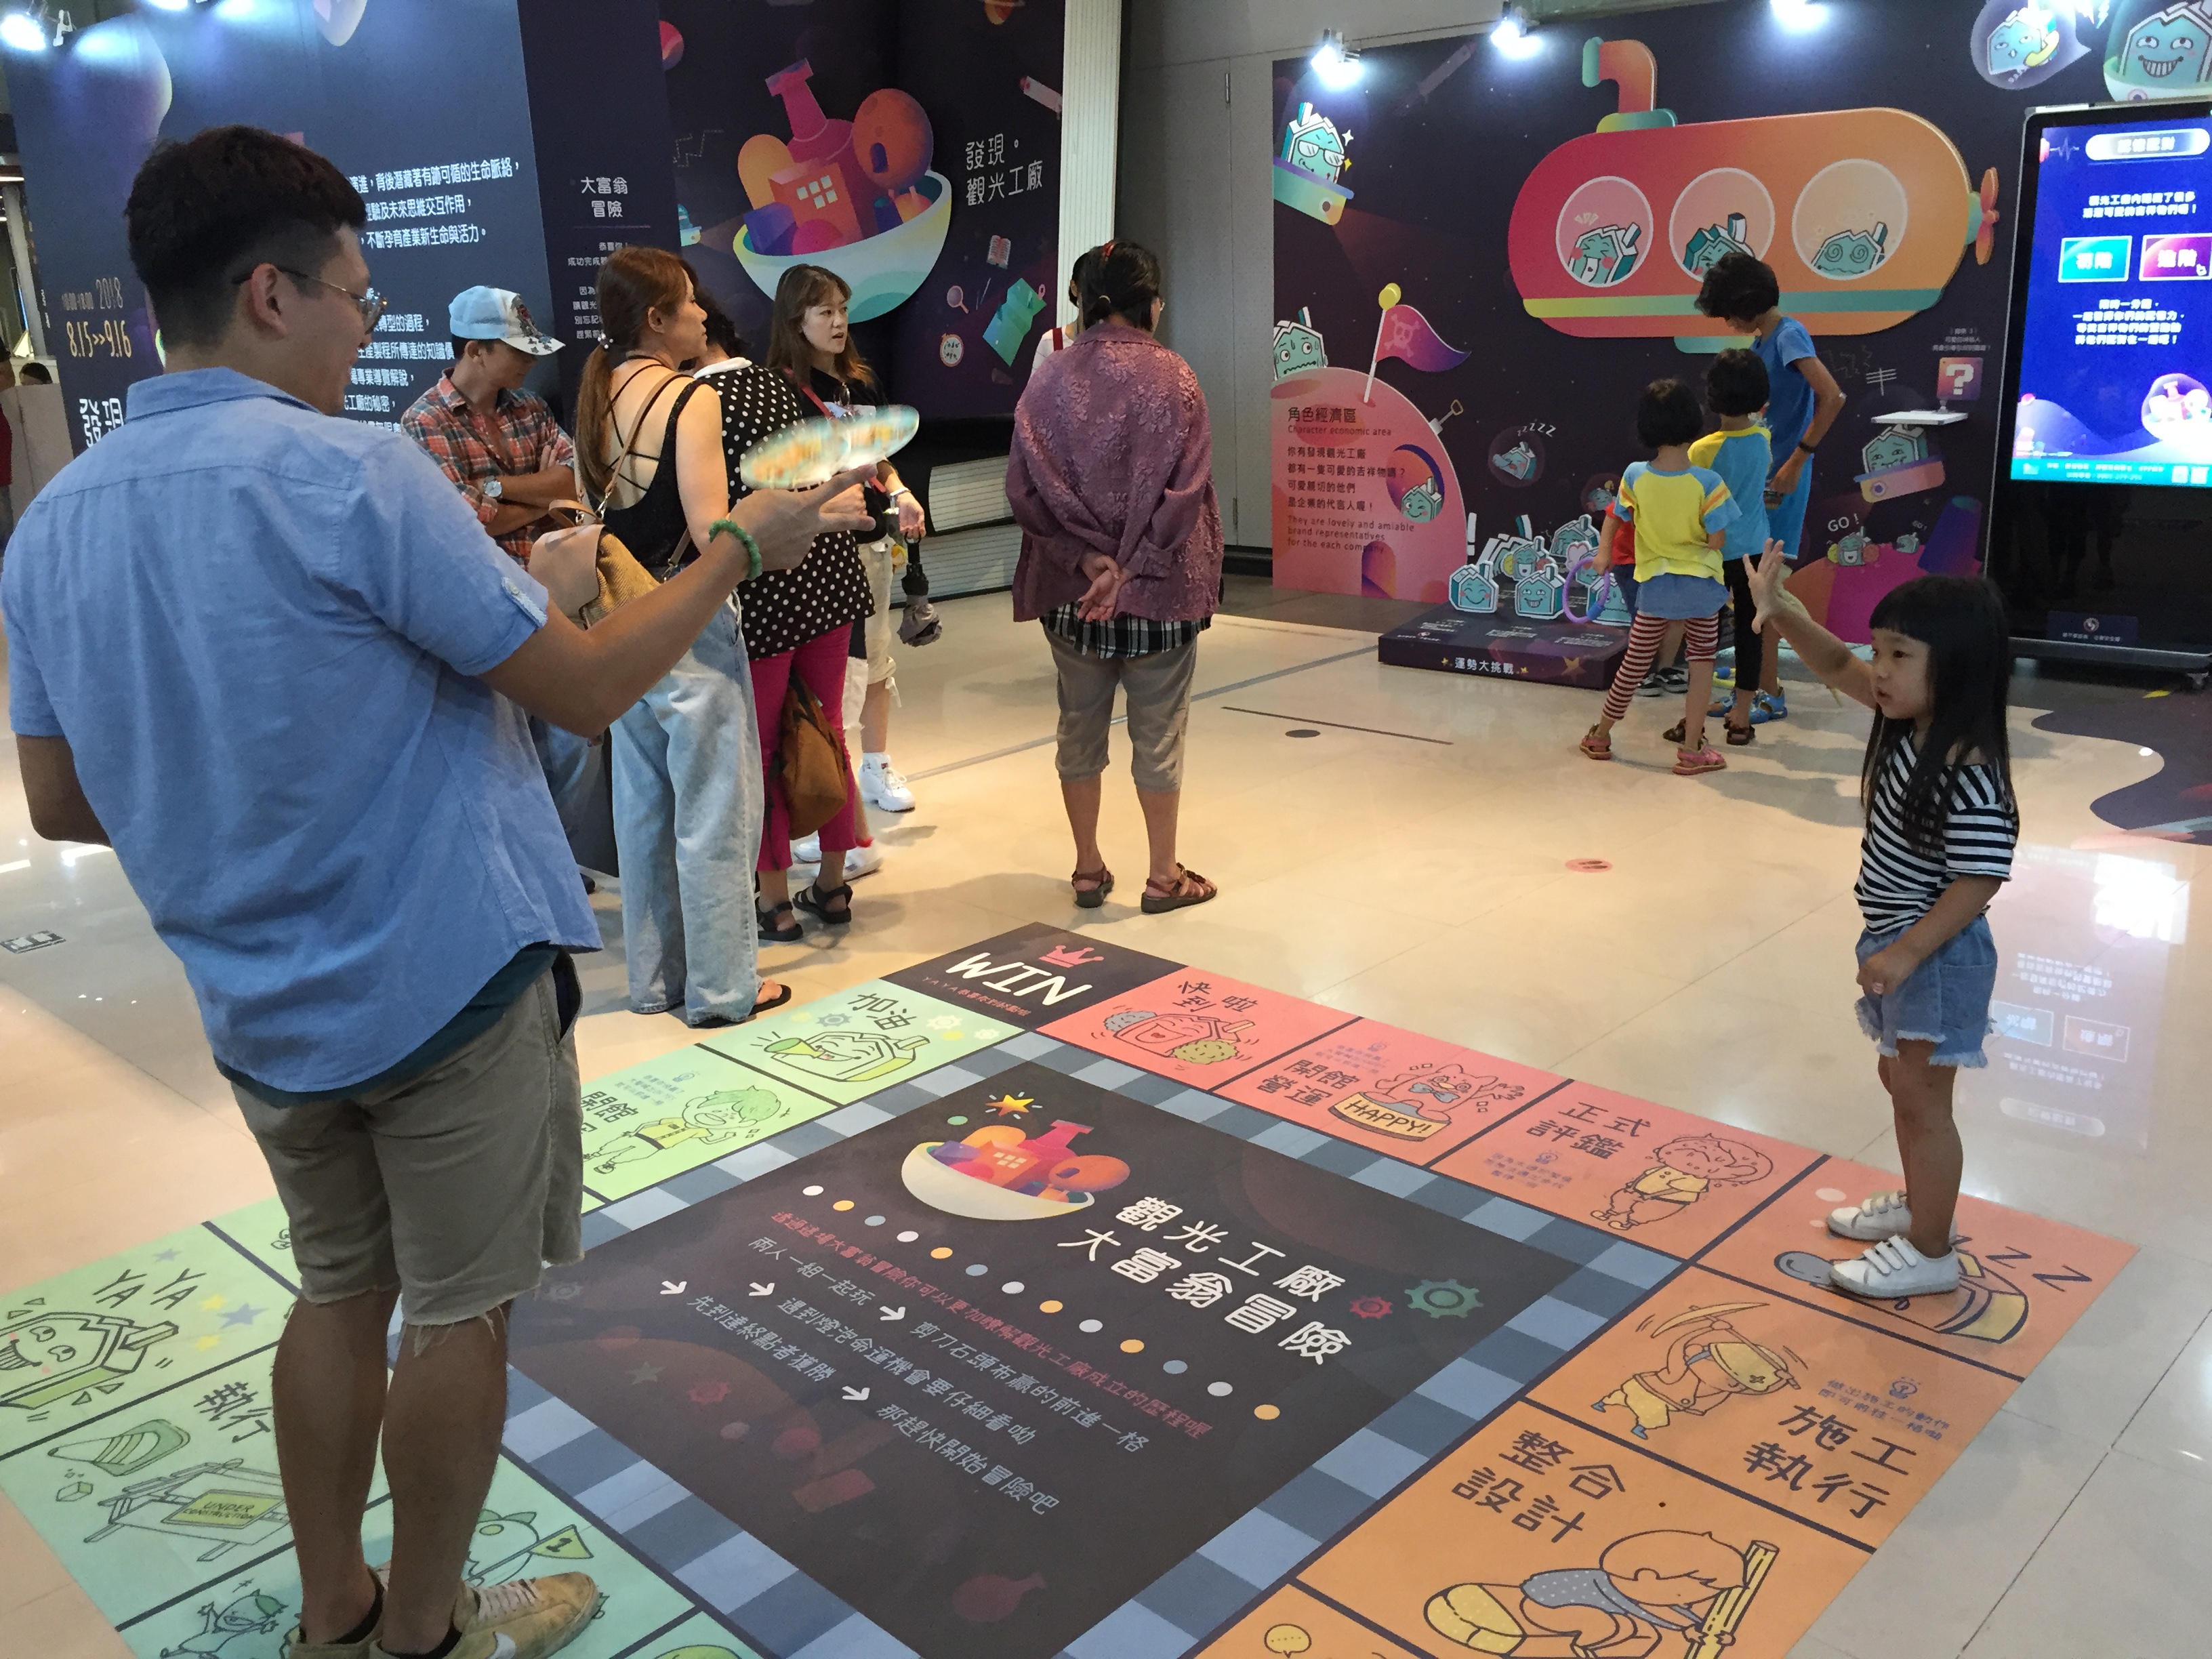 2018 台灣設計展【軟：硬】－發現。觀光工廠08/15-09/16